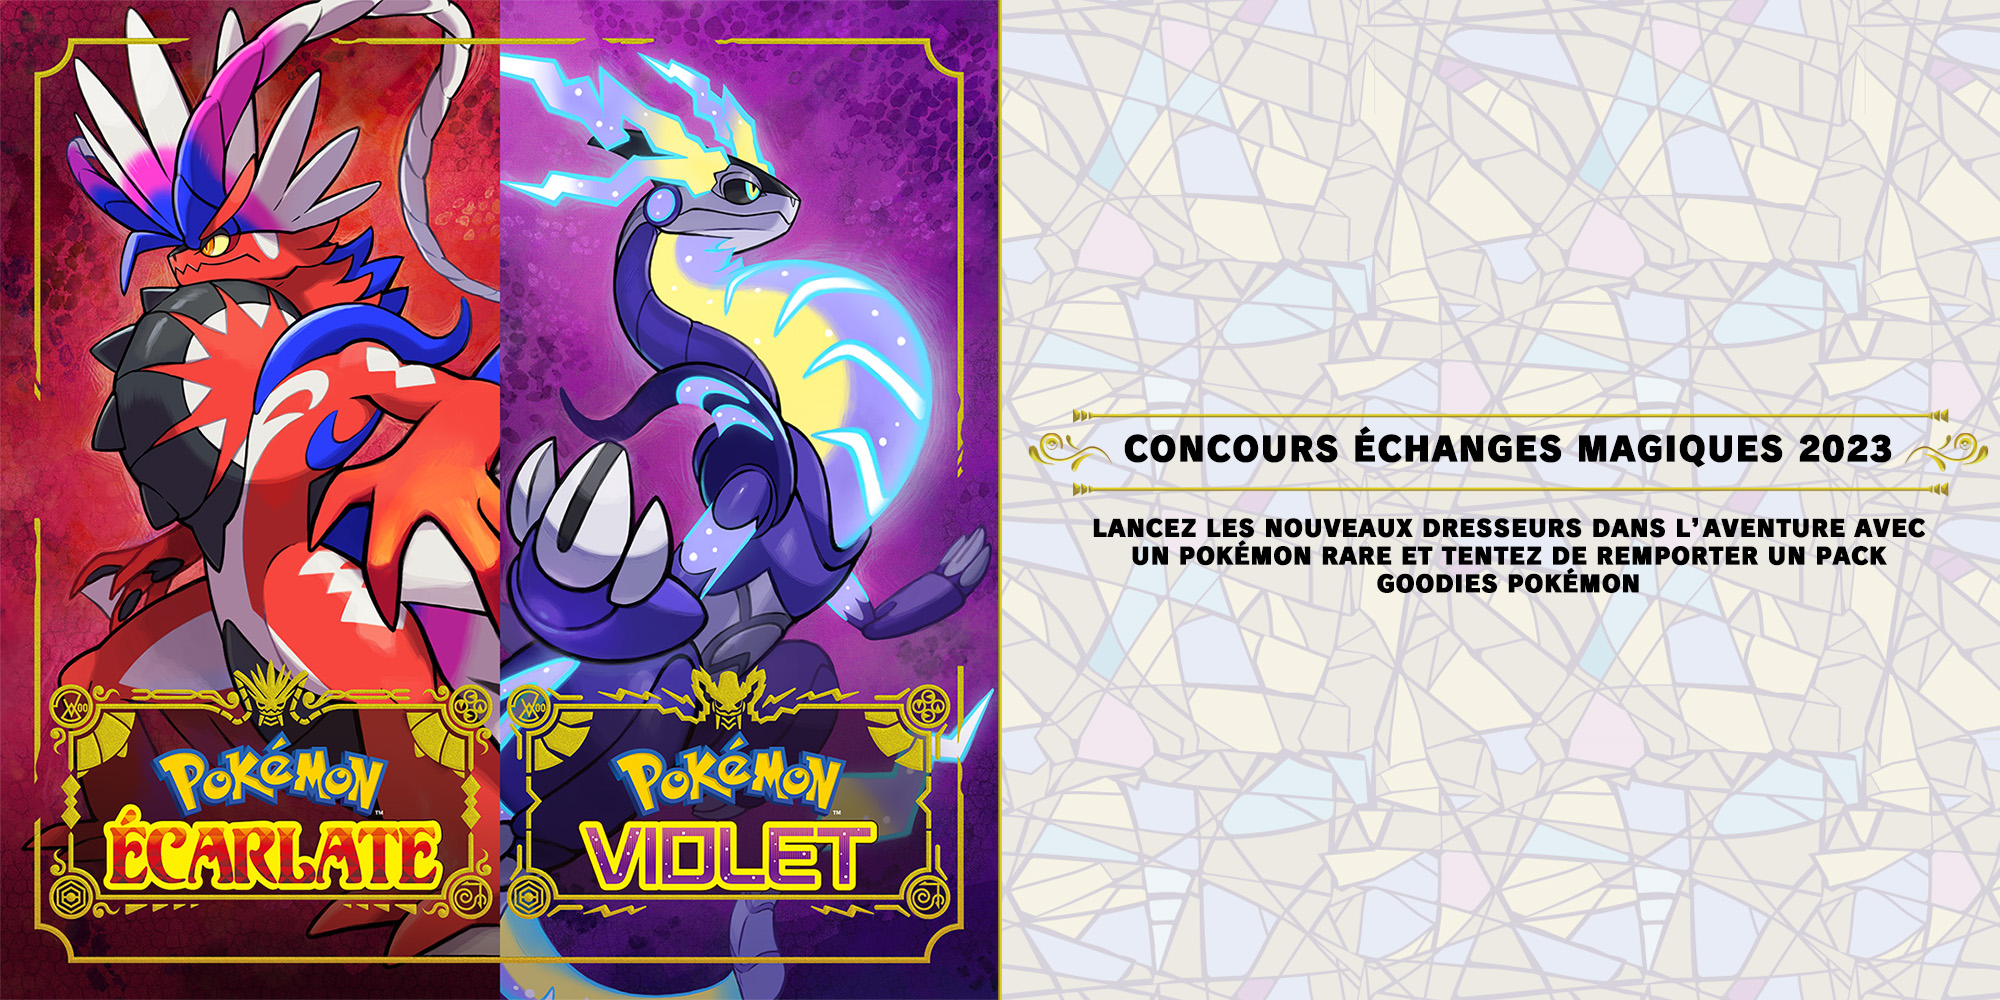 Concours Échanges Magiques Pokémon Écarlate & Pokémon Violet 2023